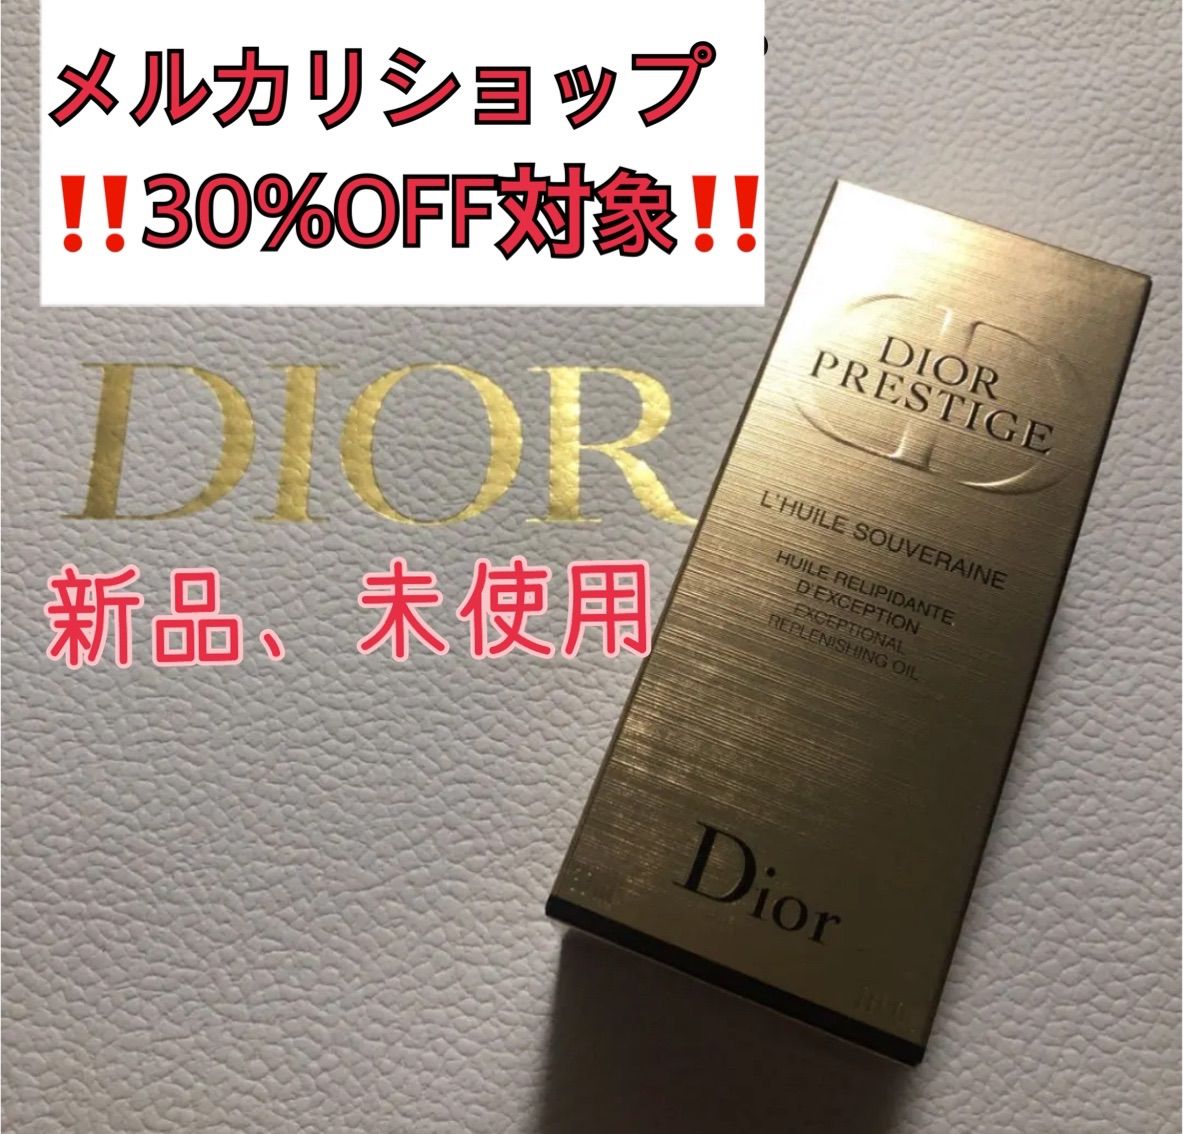 ディオール プレステージ ソヴレーヌ オイル 30ml Dior dior ...